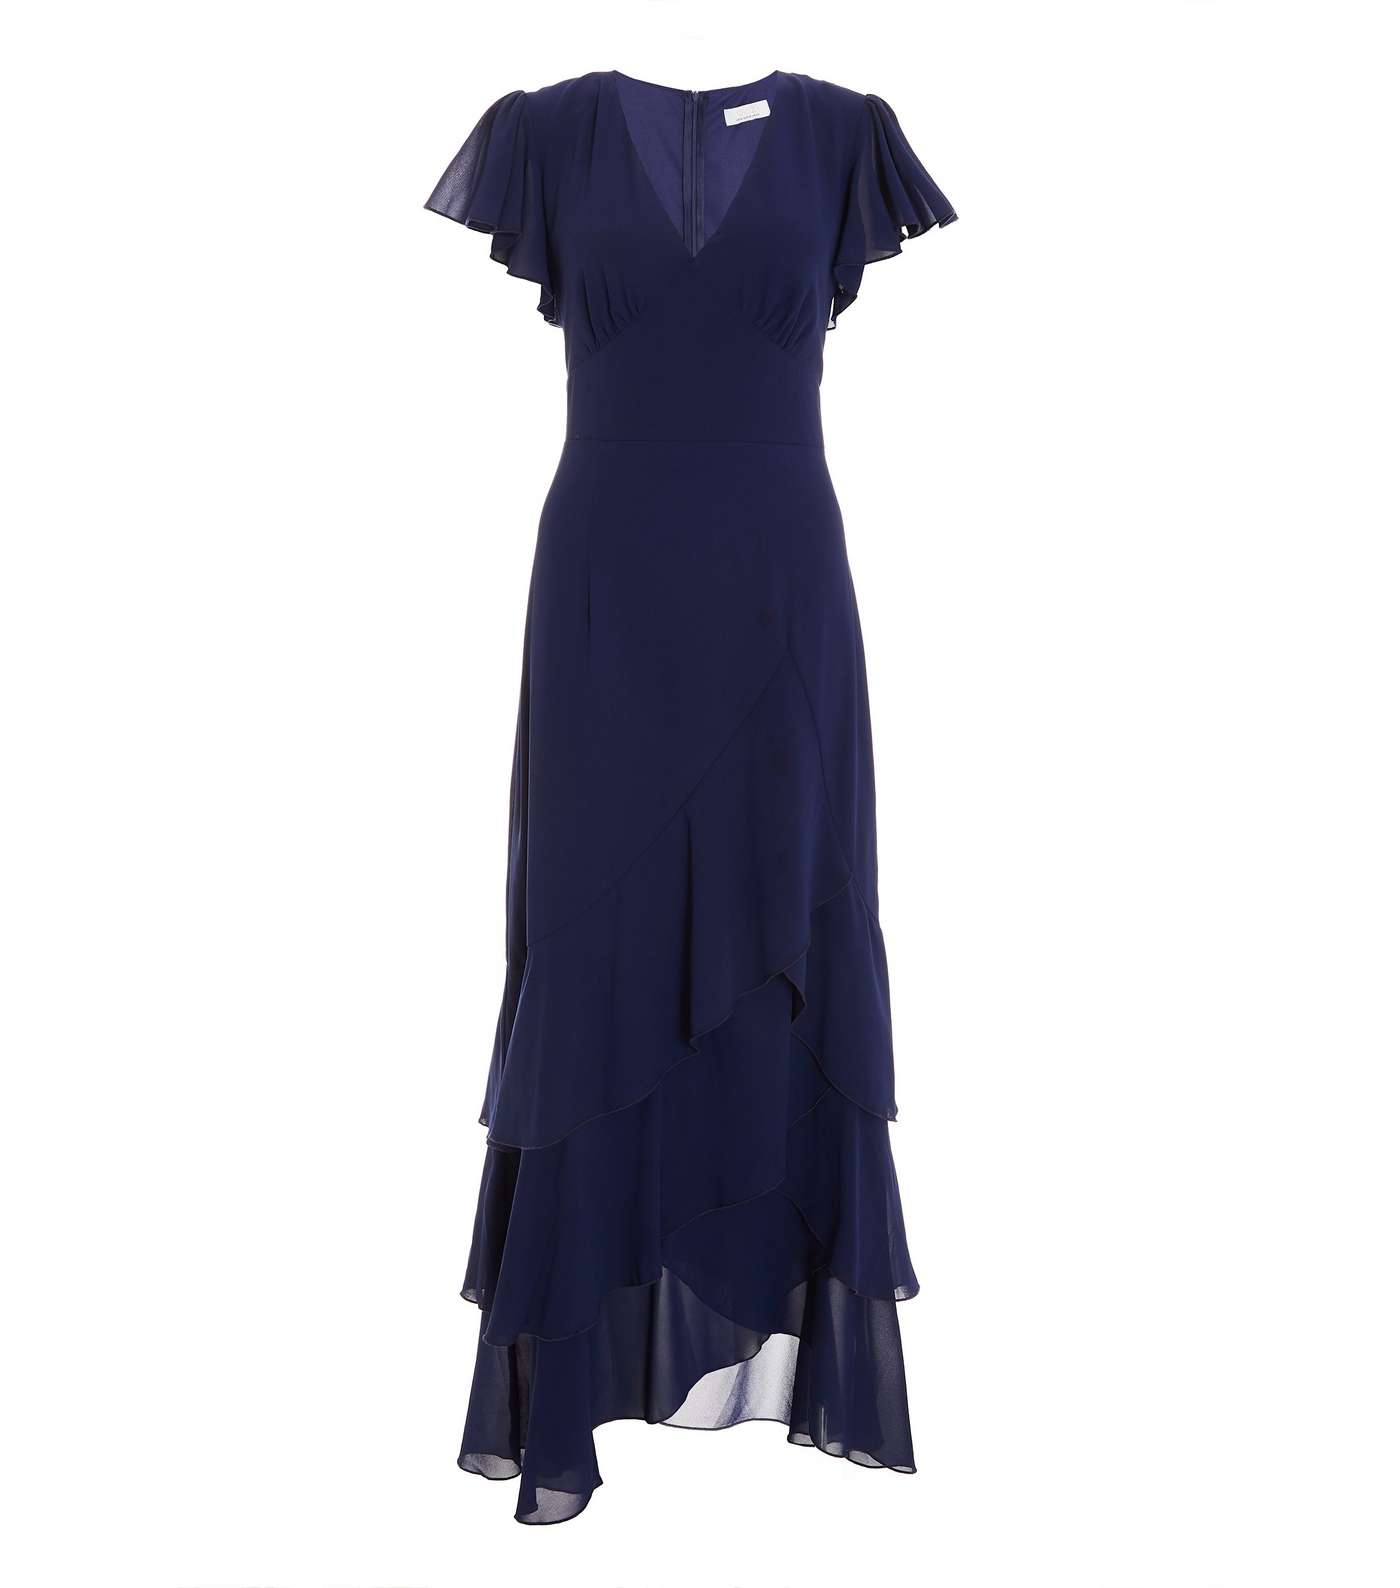 QUIZ Navy Chiffon Short Flutter Sleeve Frill Maxi Dress Image 4